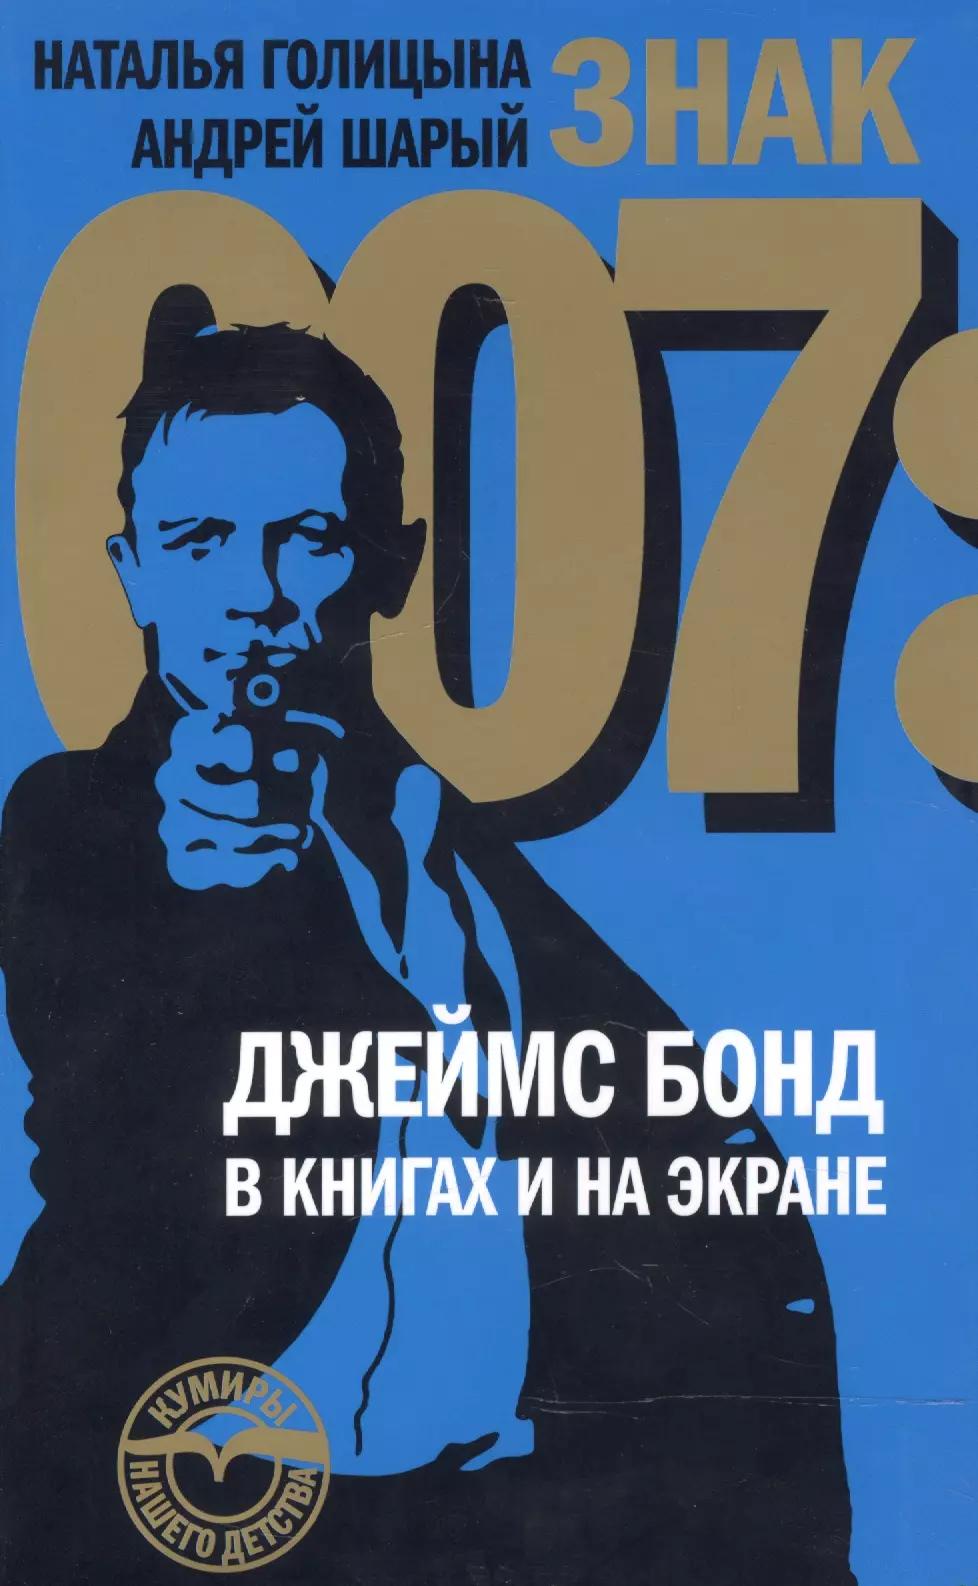 Шарый Андрей Васильевич - Знак 007: Джеймс Бонд в книгах и на экране